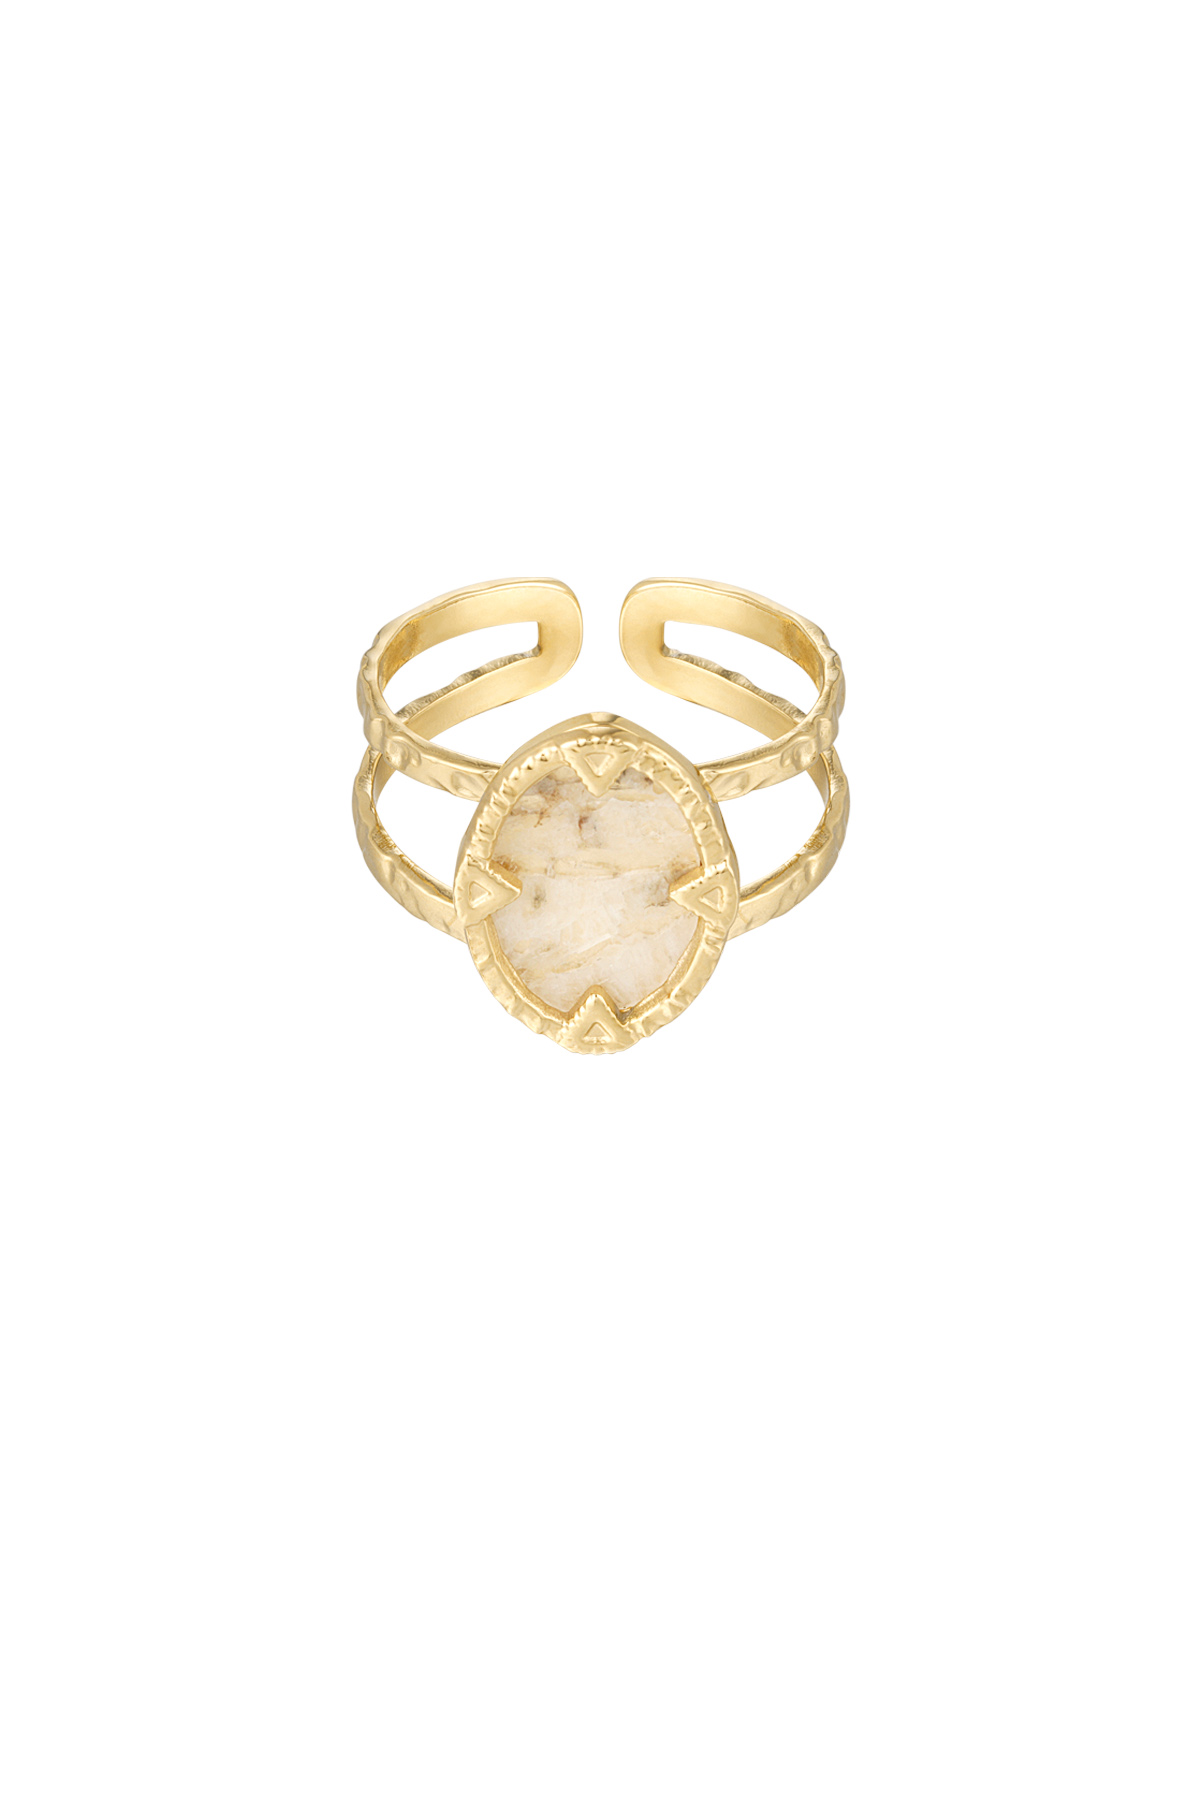 Ring met steen - goud/beige h5 